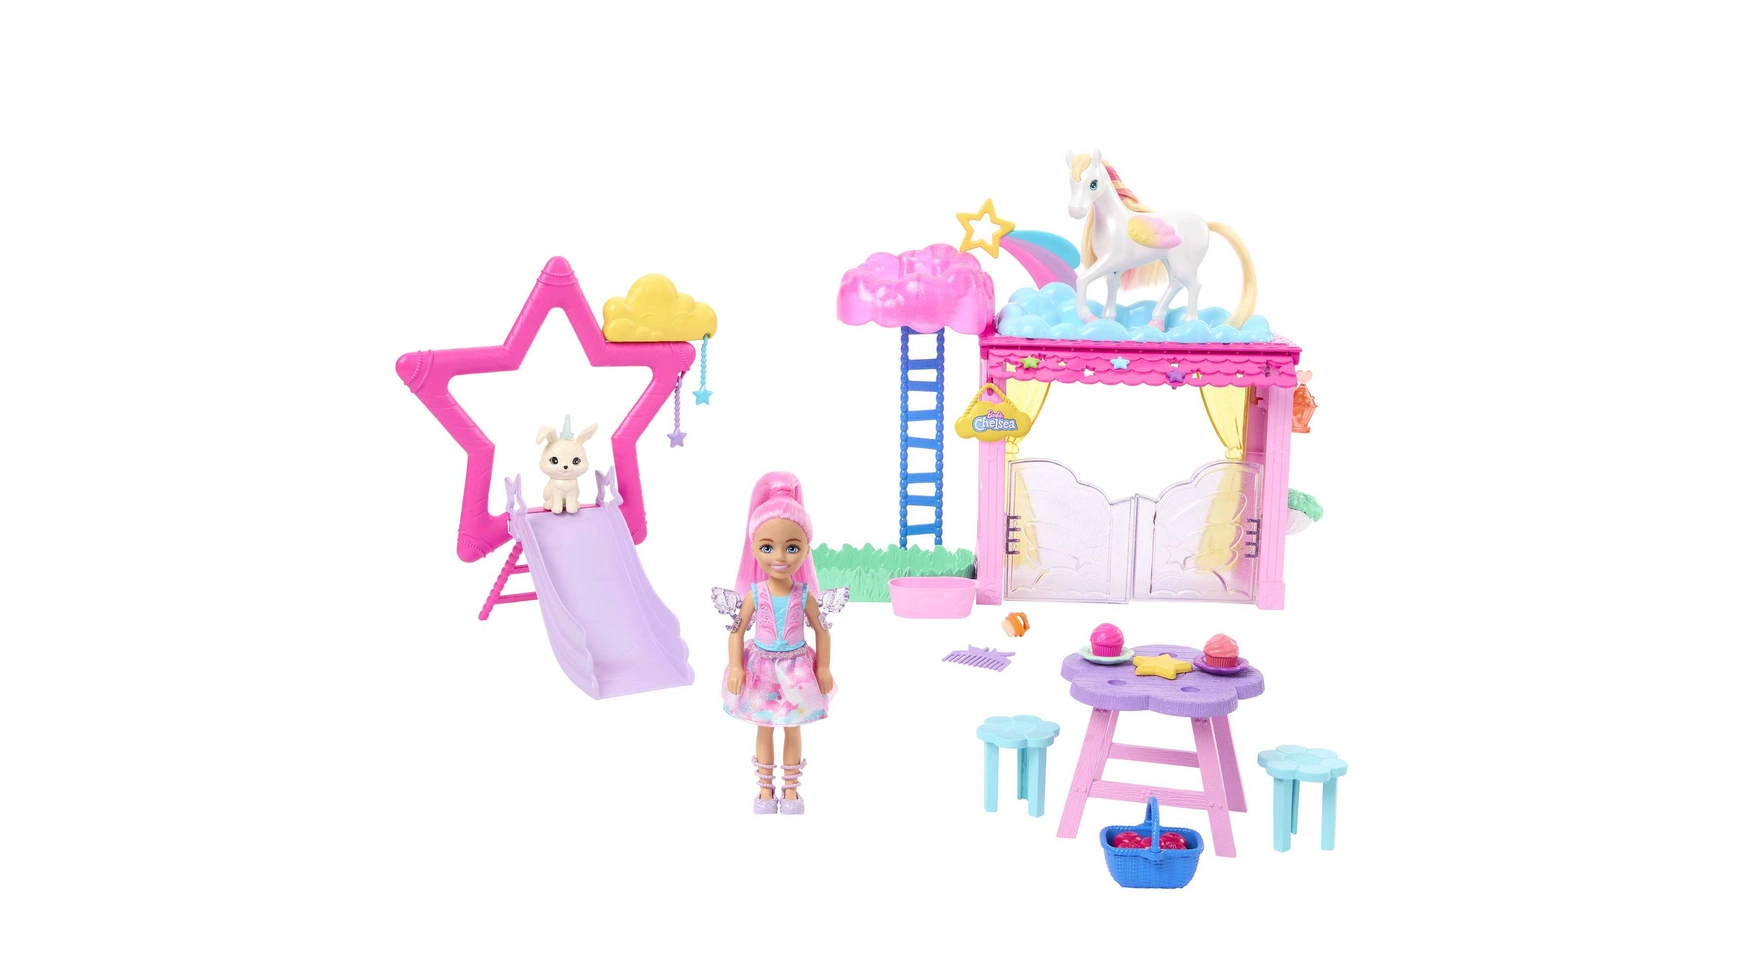 Игровой набор Barbie «Скрытое волшебство Челси и Пегас» игровой набор barbie челси магазин кафе ghv76